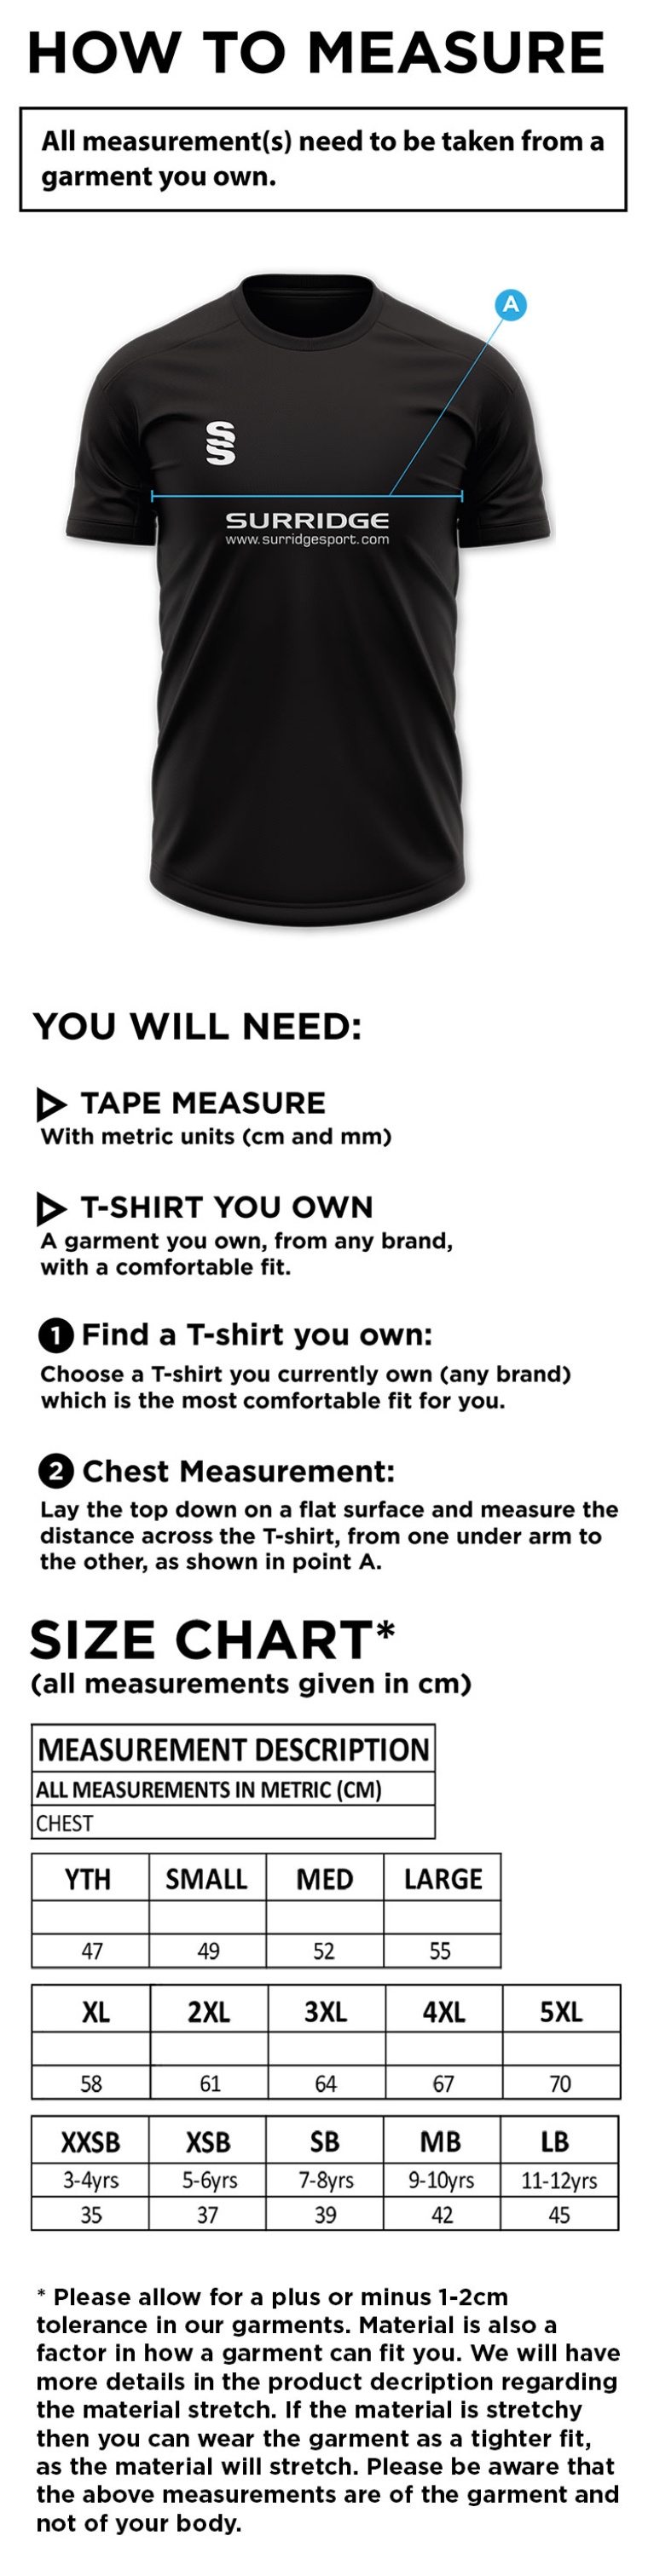 Hinckley Amateurs CC - Dual T-Shirt - Size Guide